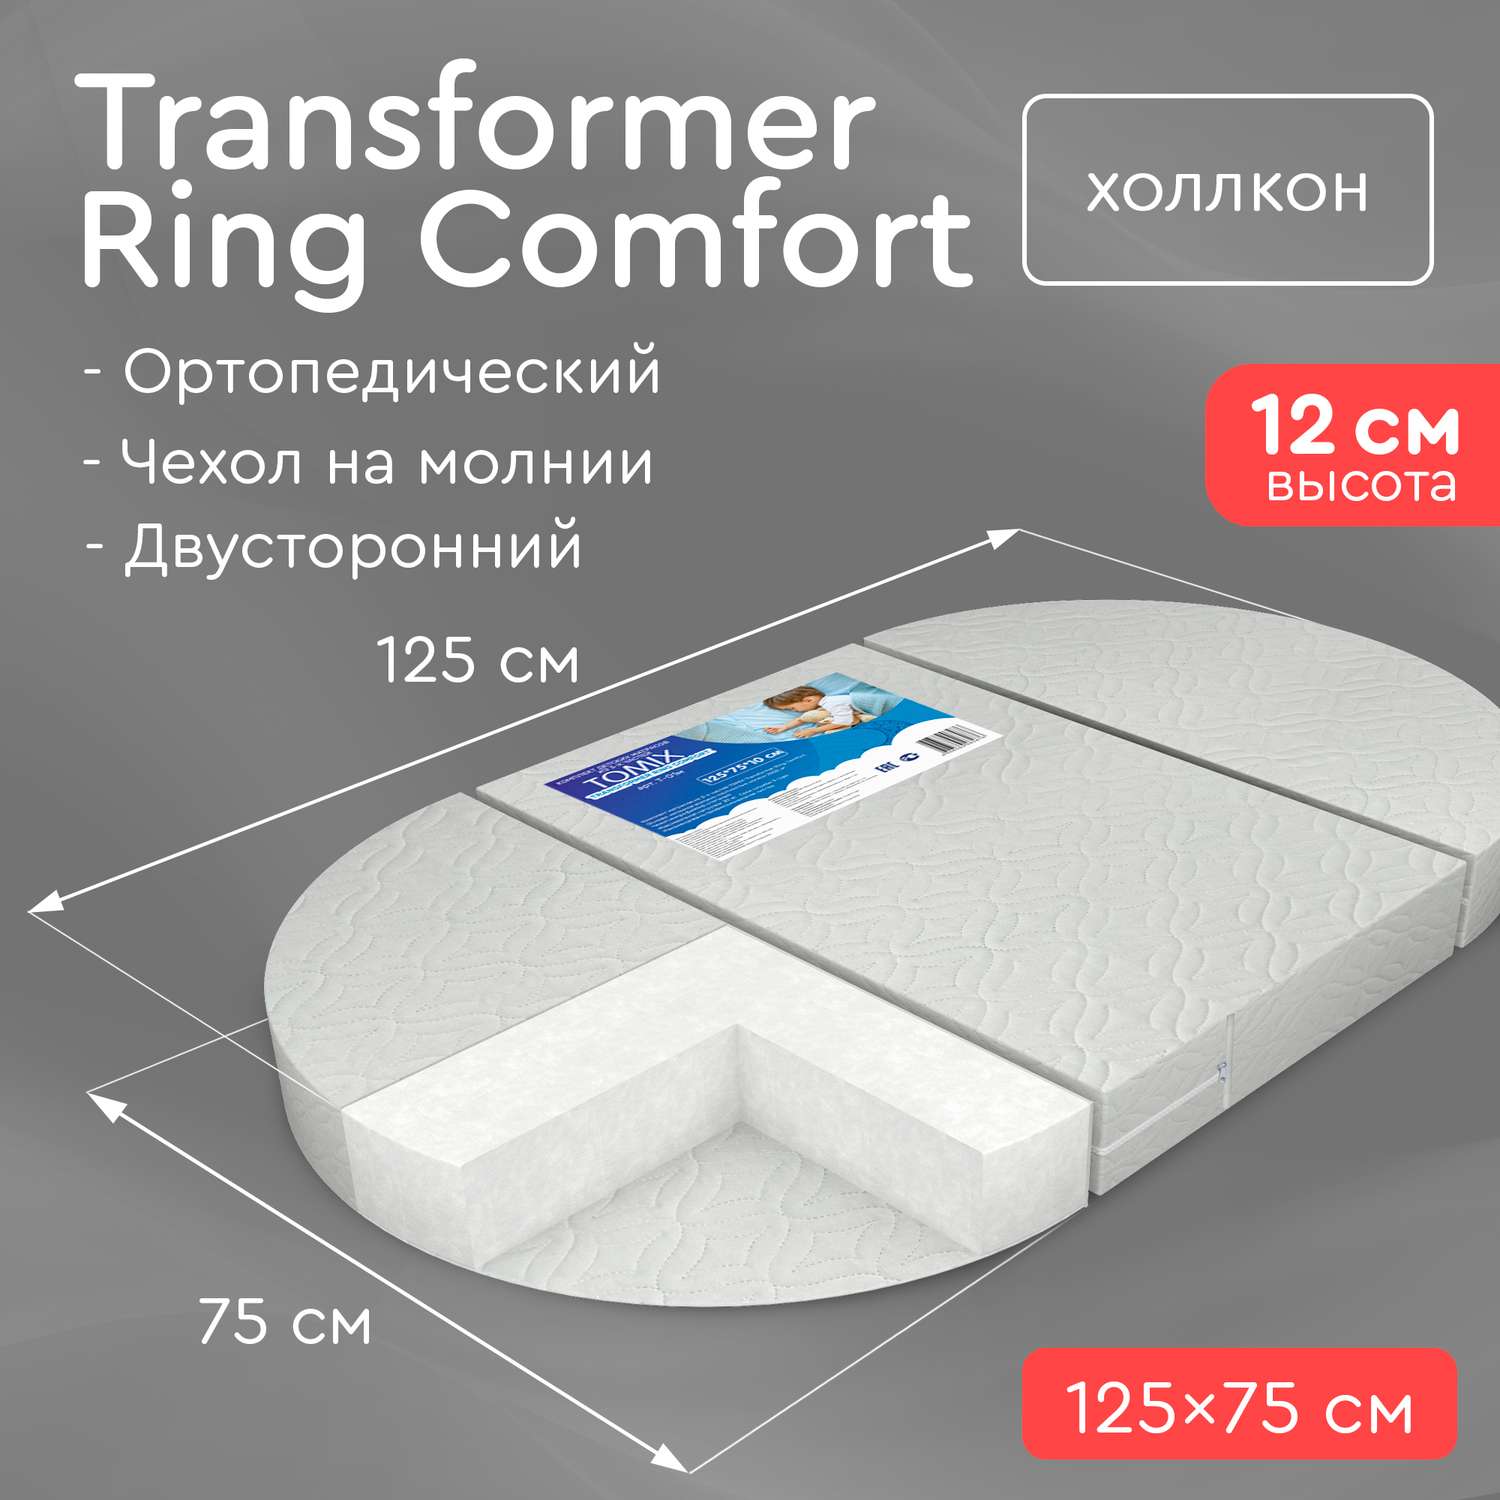 Матрас-трансформер Tomix Transformer Ring Comfort 125*75 см - фото 2